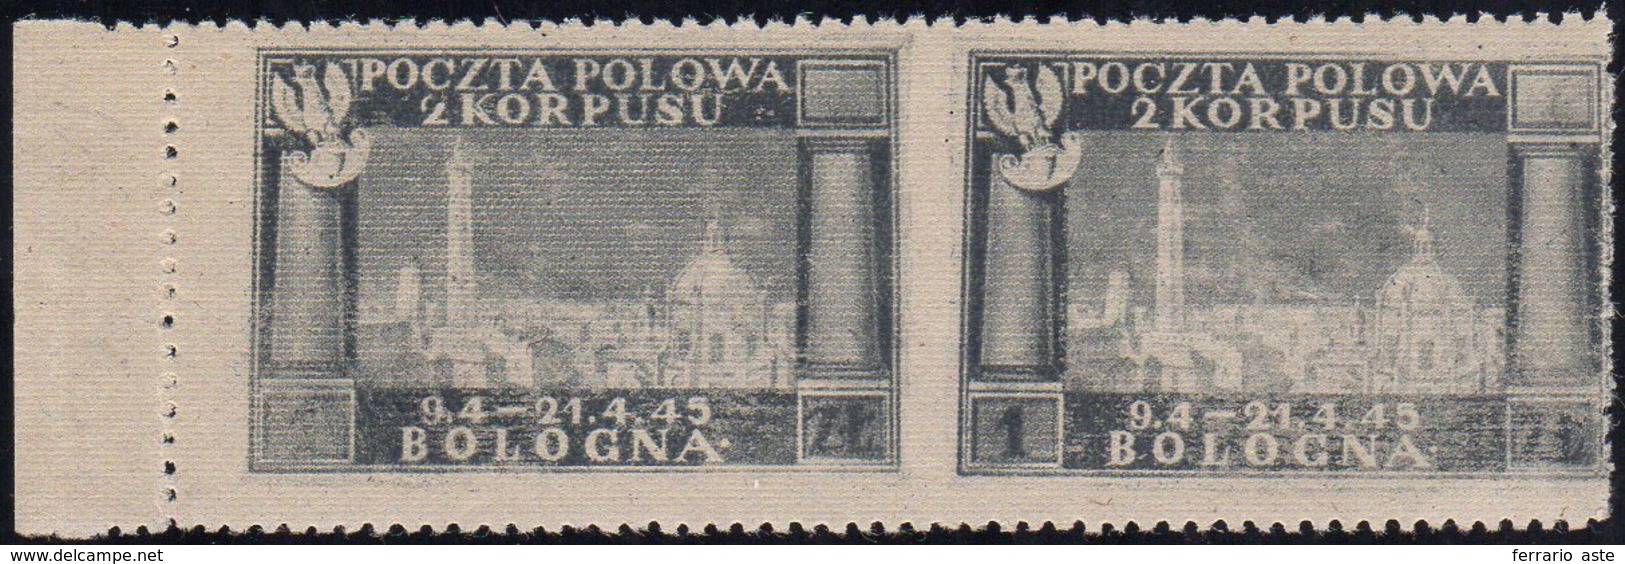 1946 - Vittorie Polacche, Carta Grigiastra, Coppia Orizzontale Non Dentellata Al Centro (3db), Gomma... - 1946-47 Corpo Polacco